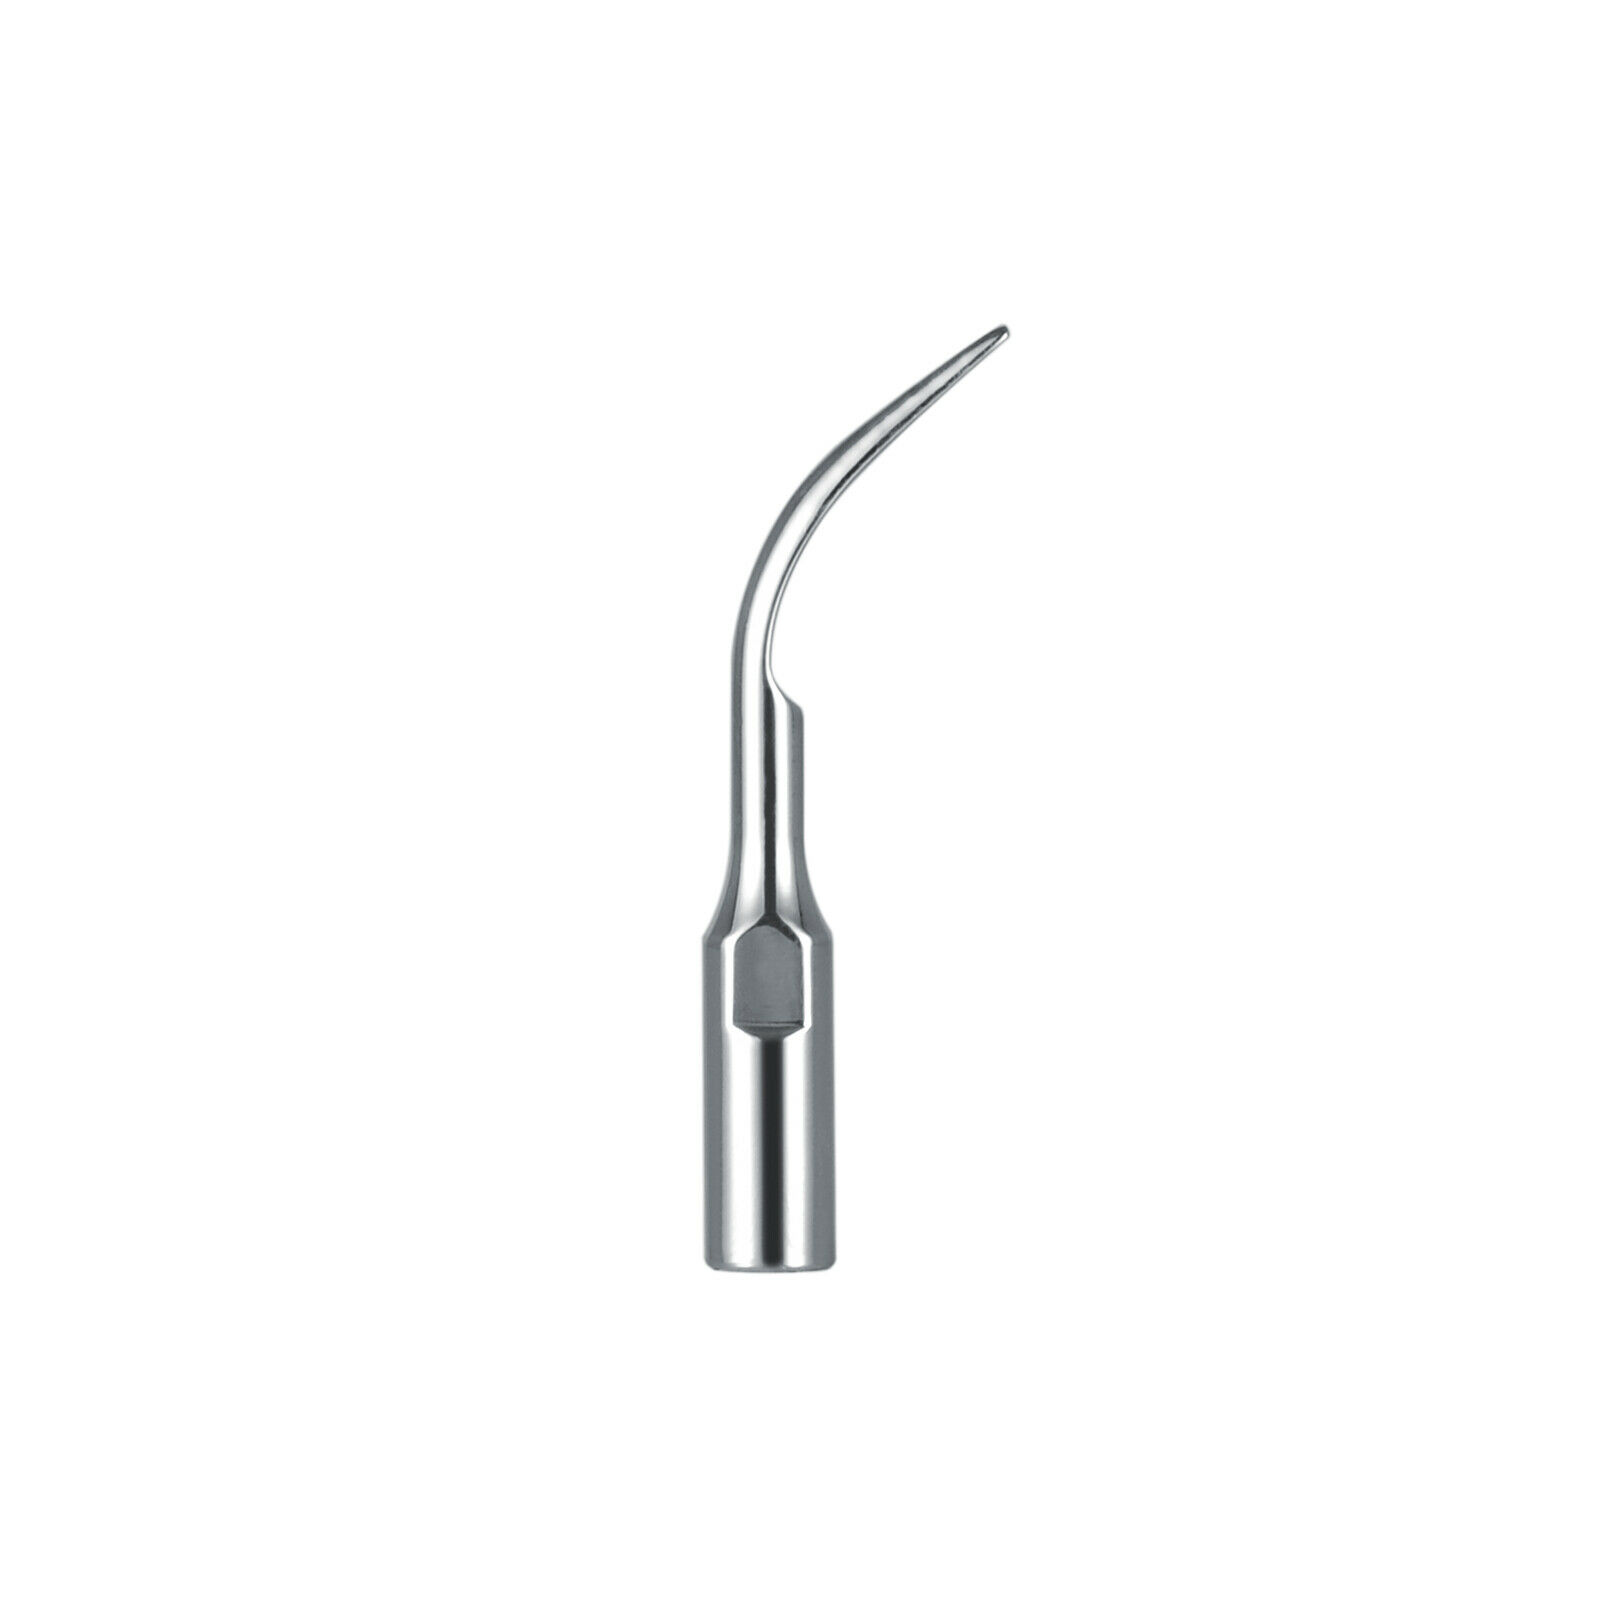 10 pcs Dental Ultrasonic Scaler Insert Scaling Tips for DTE SATELEC NSK GD1